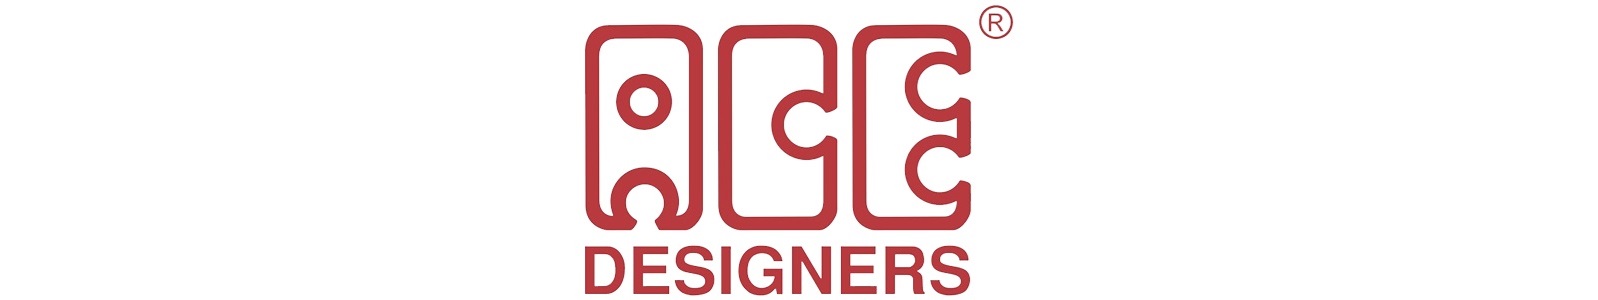 Ace-Designers2